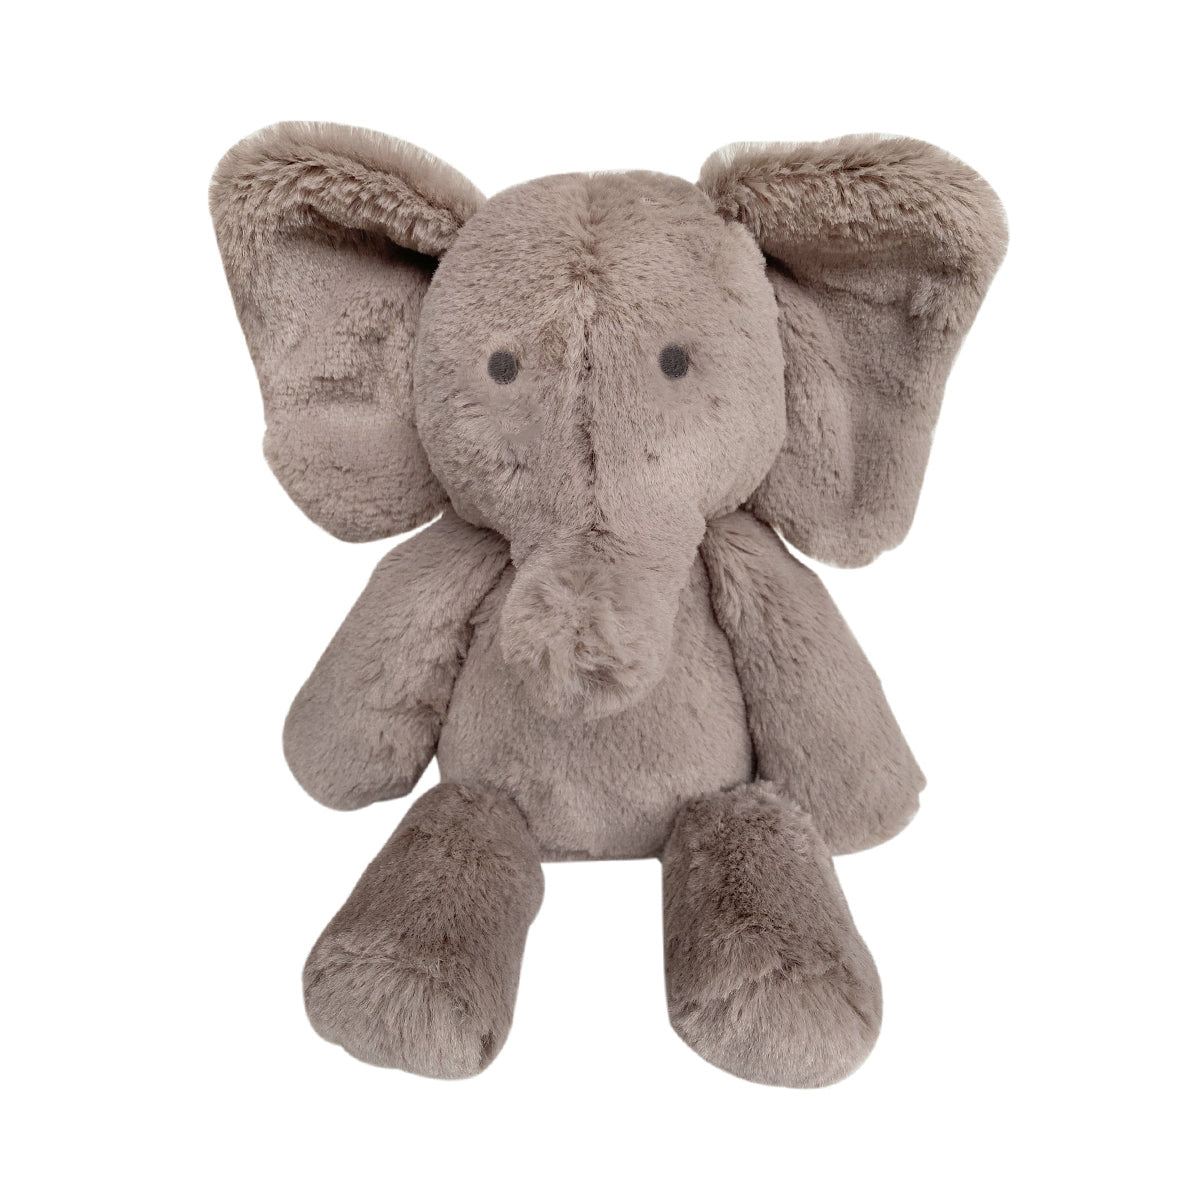 OB Designs Elly Elephant Soft Toy